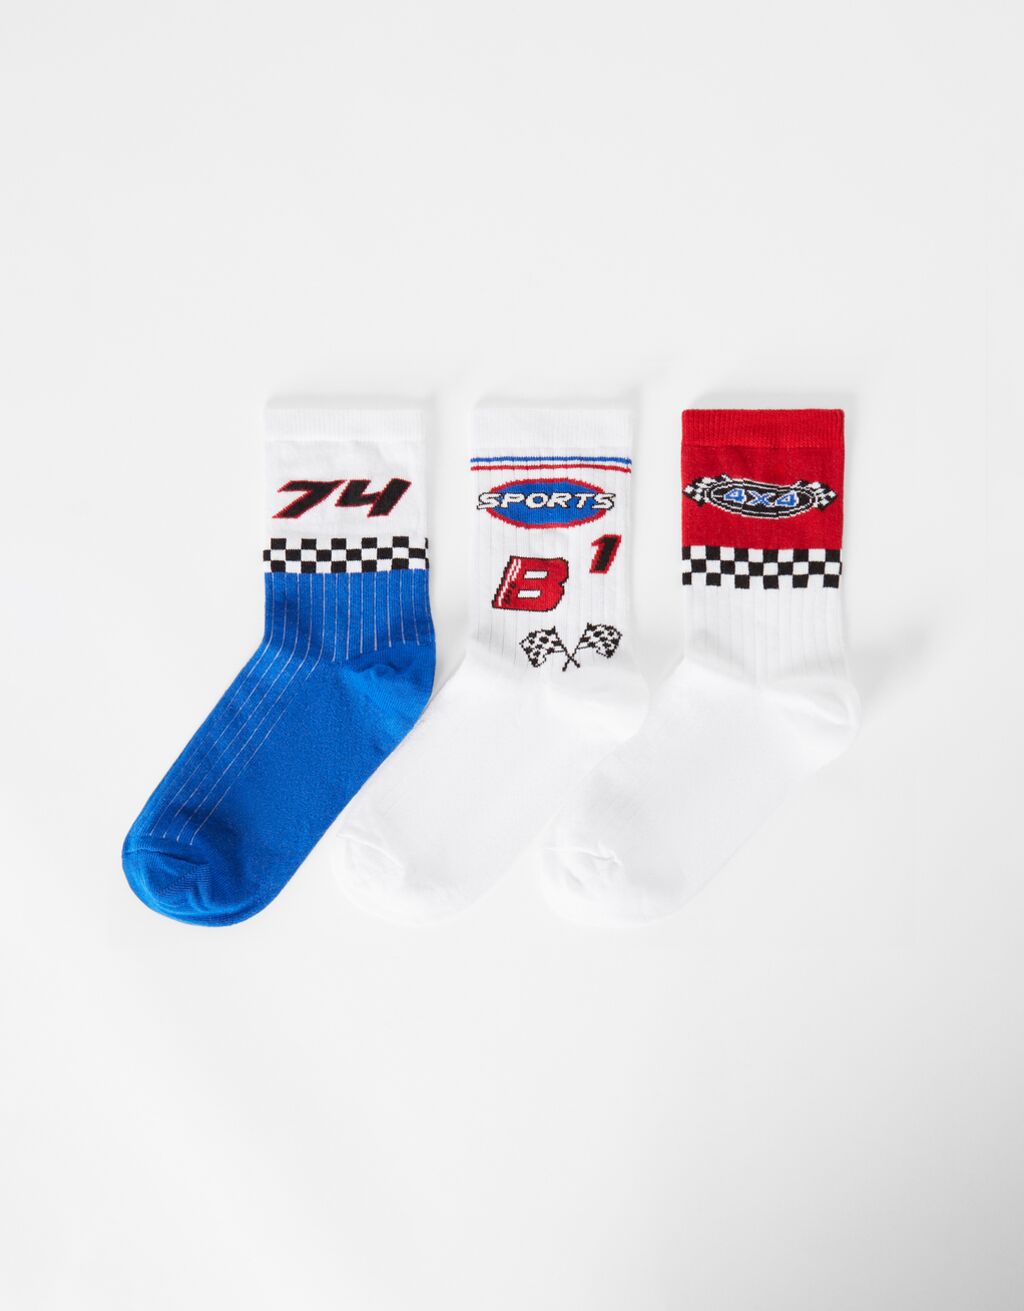 Pack of 3 pairs of racing socks